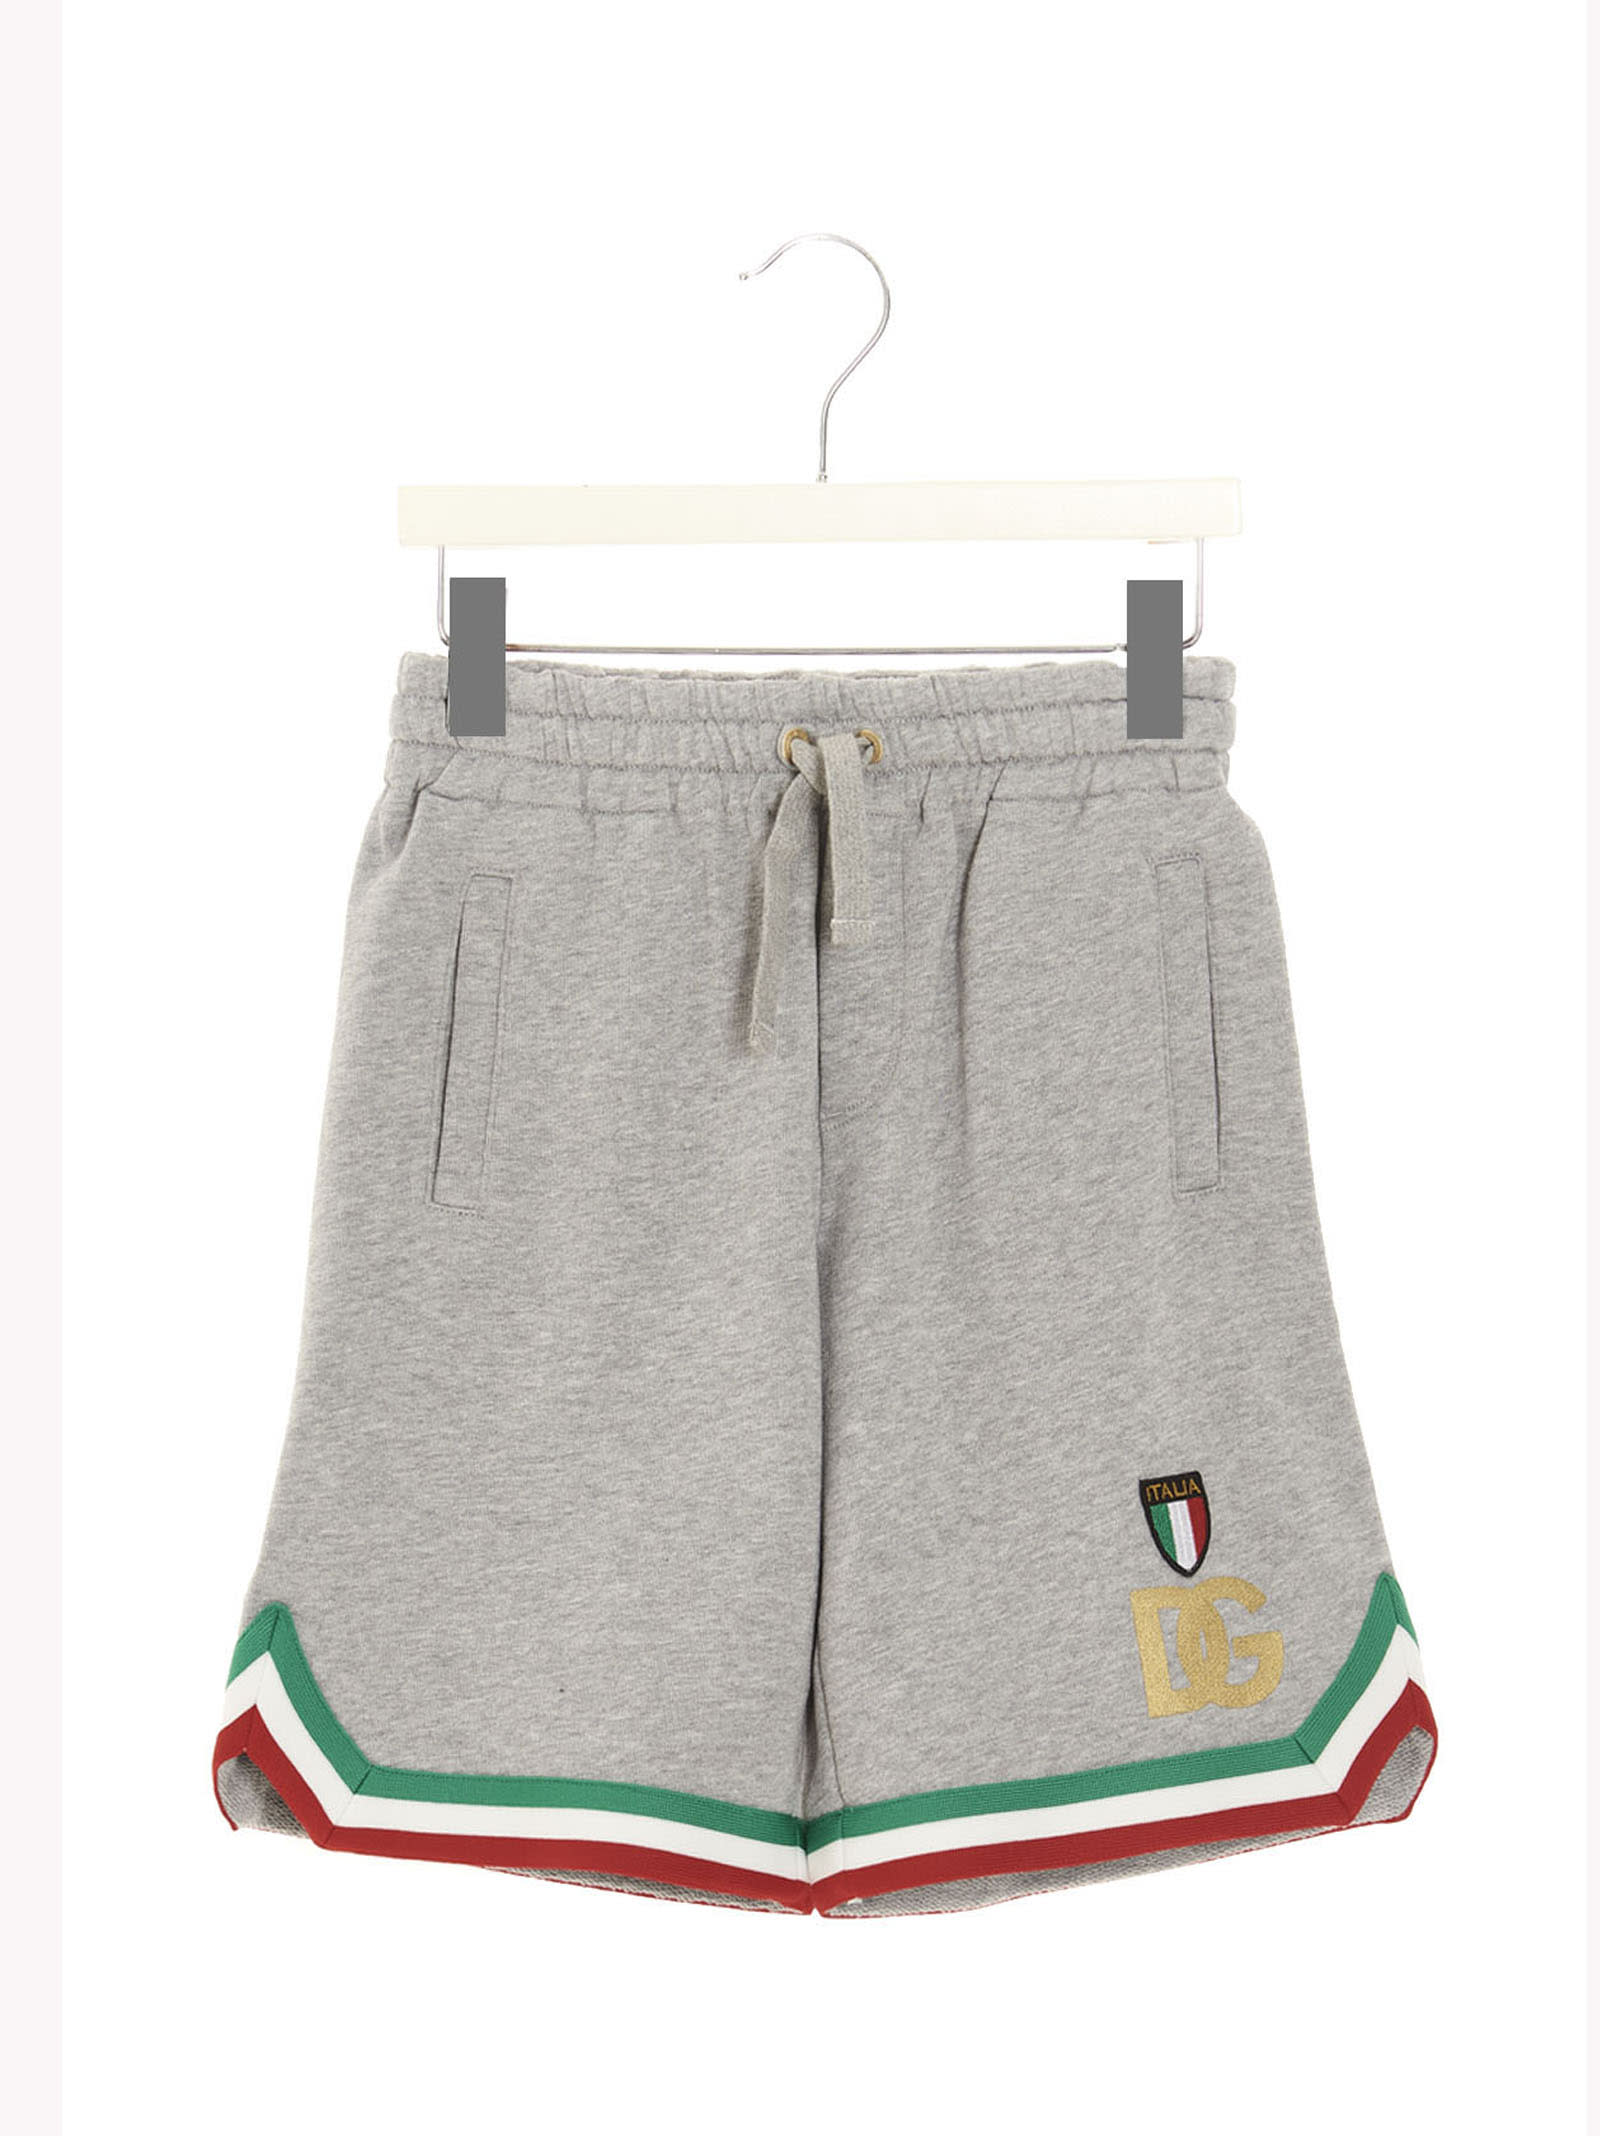 Dolce & Gabbana Logo Bermuda Shorts